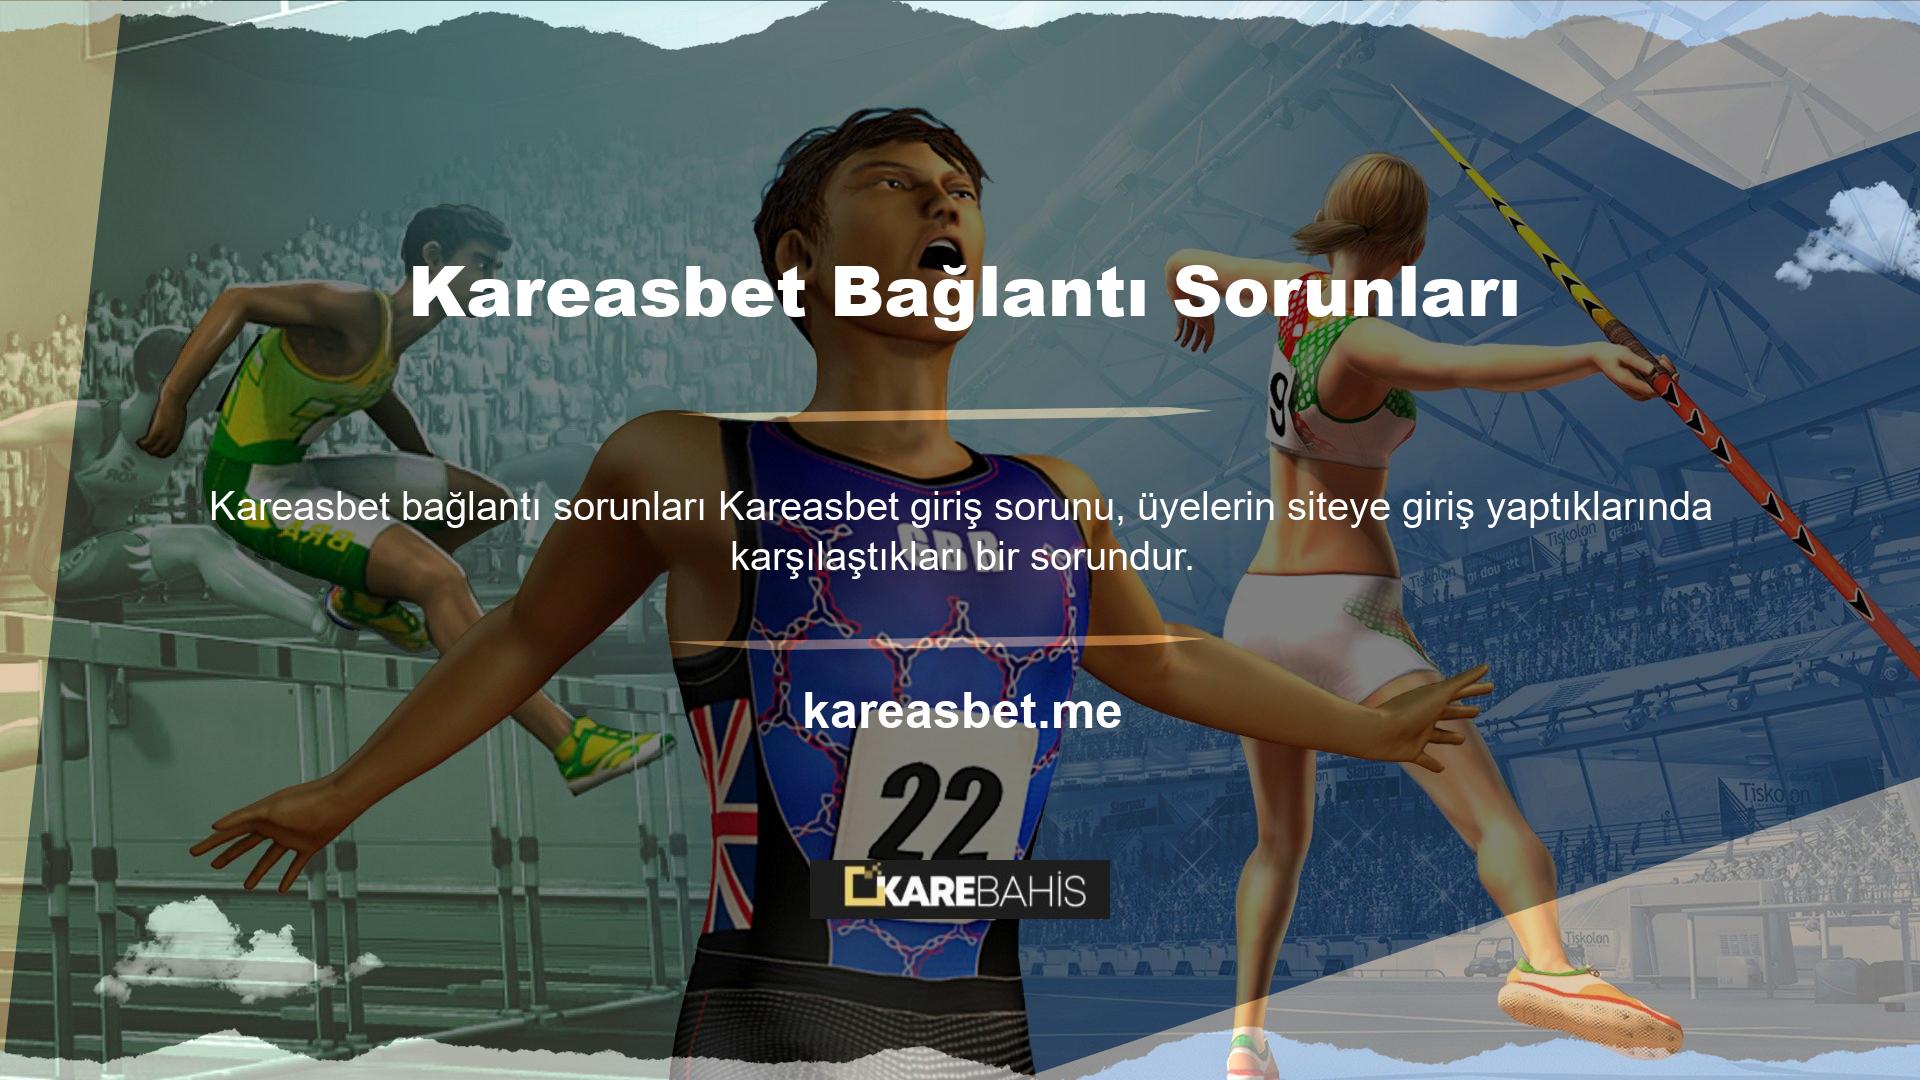 Kareasbet saygın ve iyi bilinen bir web sitesidir